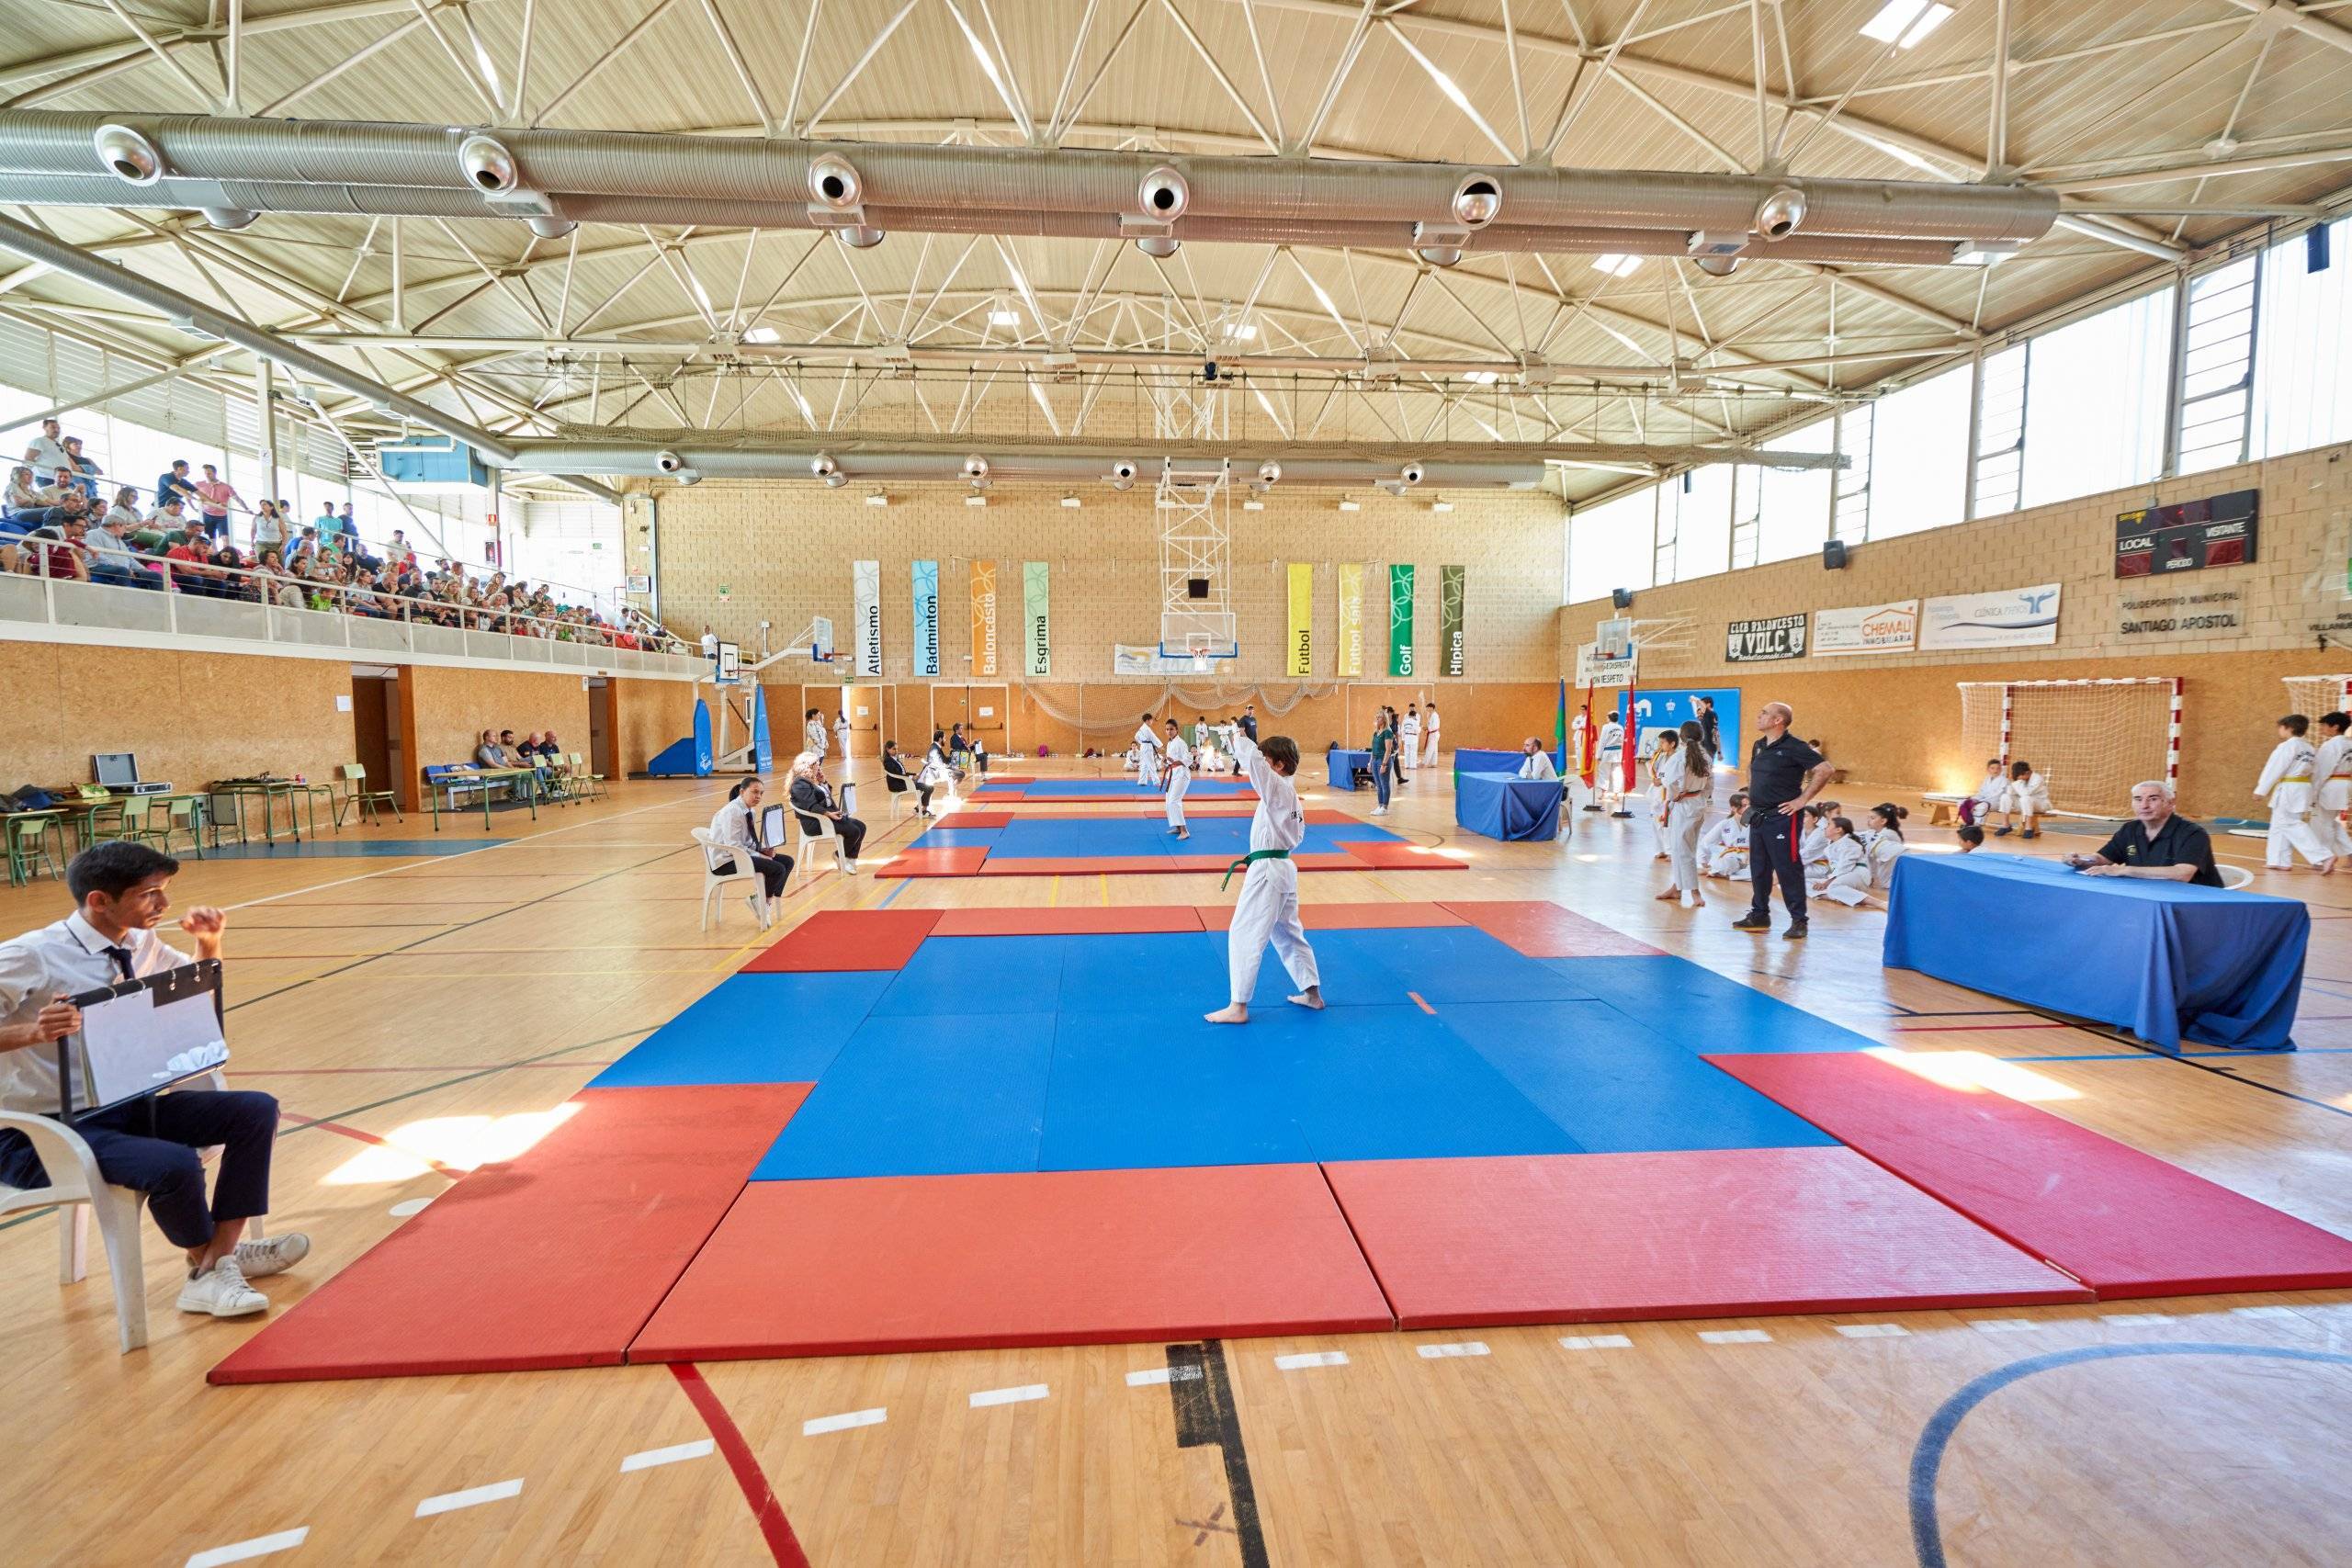 Participantes del Campeonato de taekwondo compitiendo.